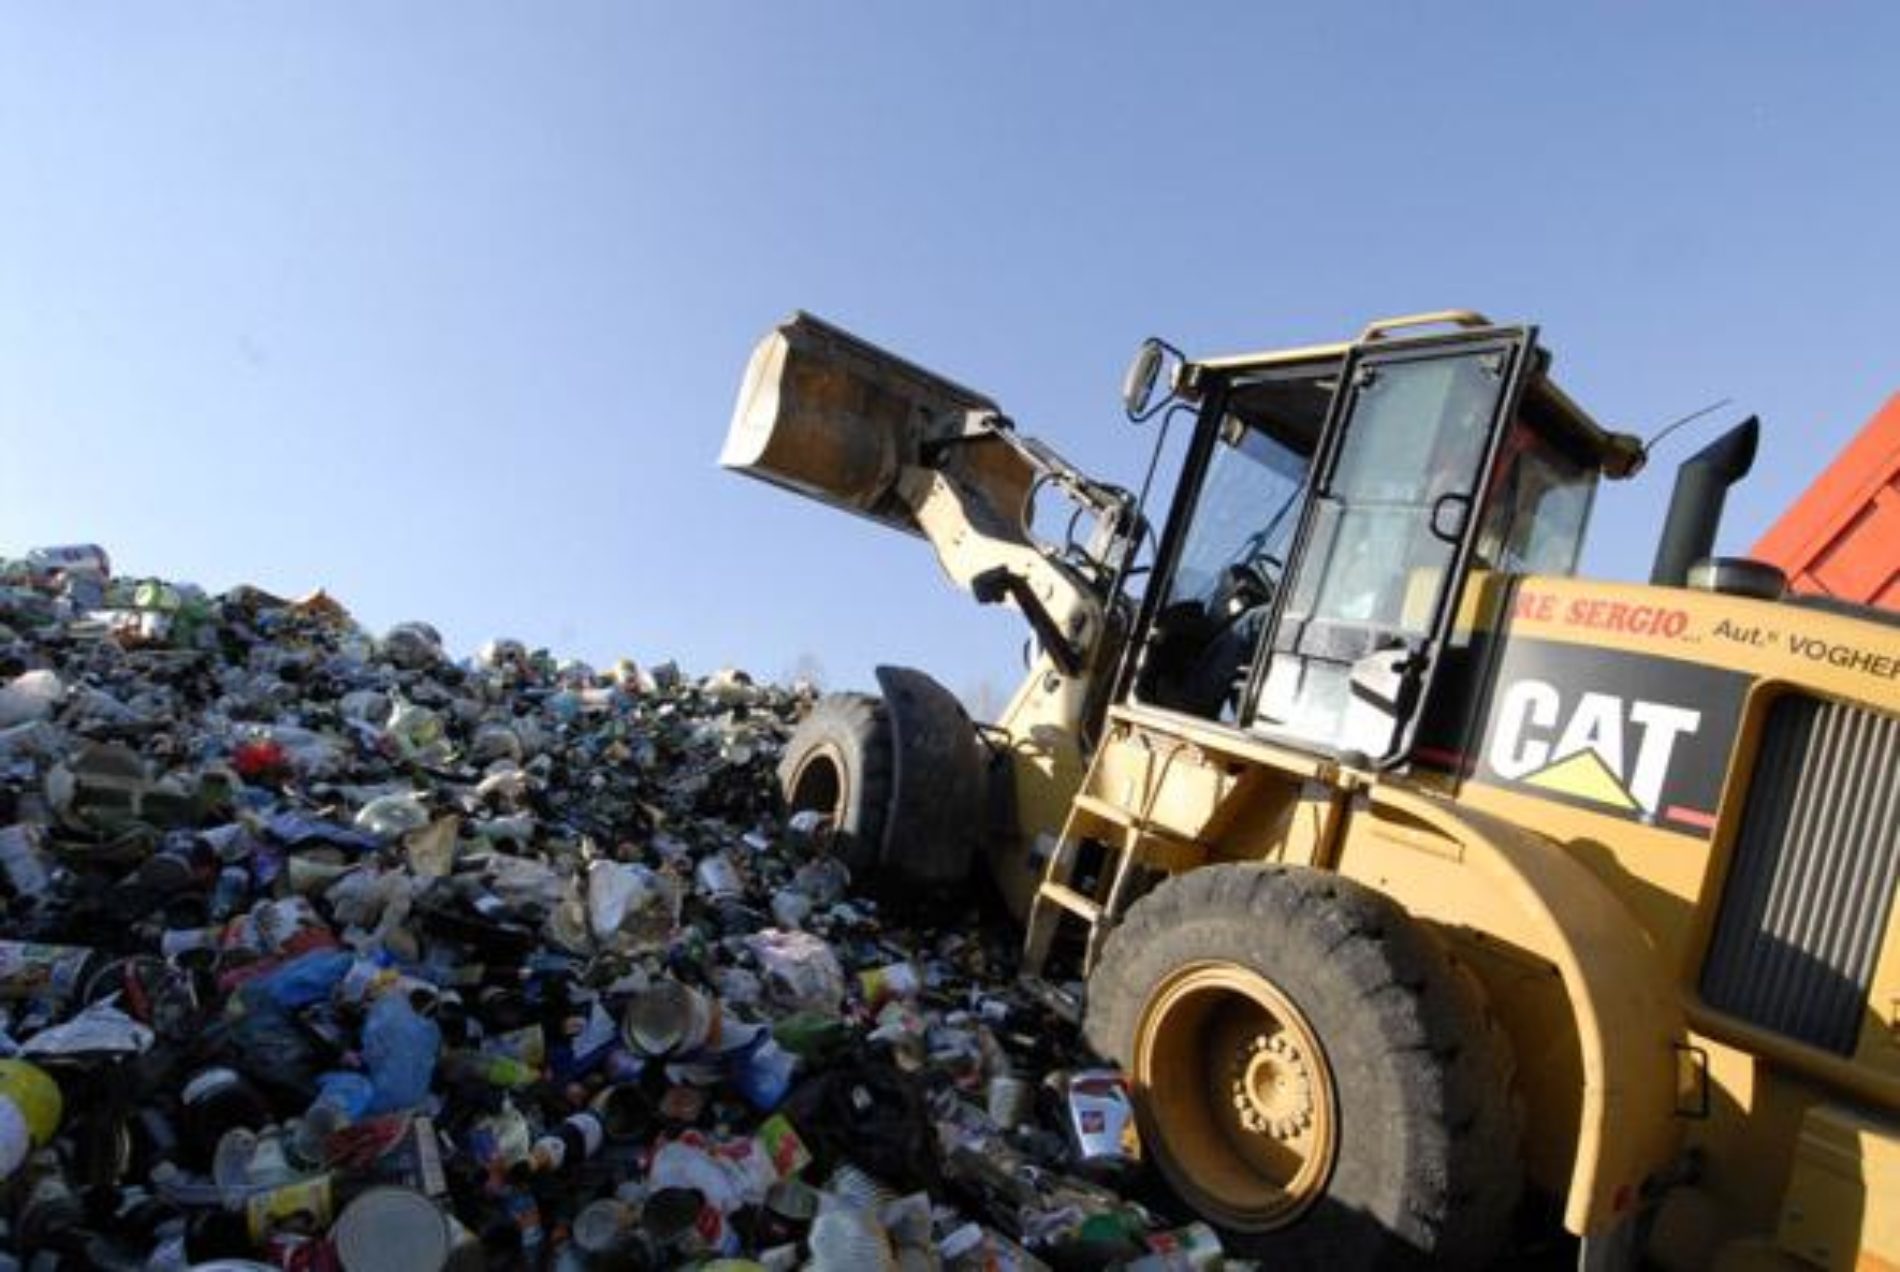 Il comune affiderà il servizio di raccolta e smaltimento rifiuti ad una ditta esterna